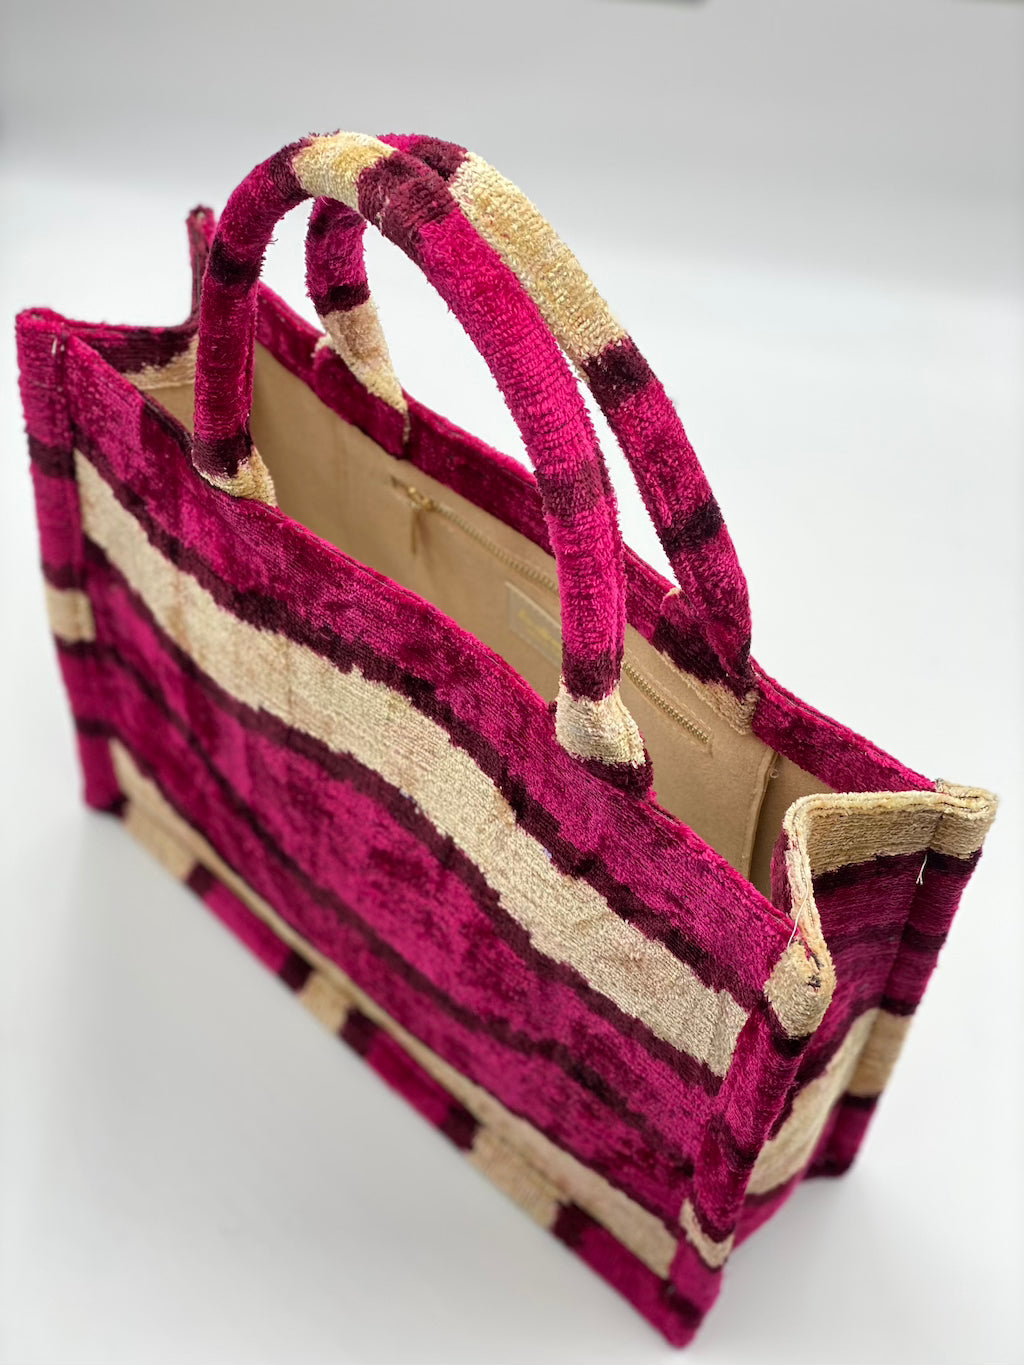 Velvet Silk IKAT Large Handbag - Hot Pink Wave